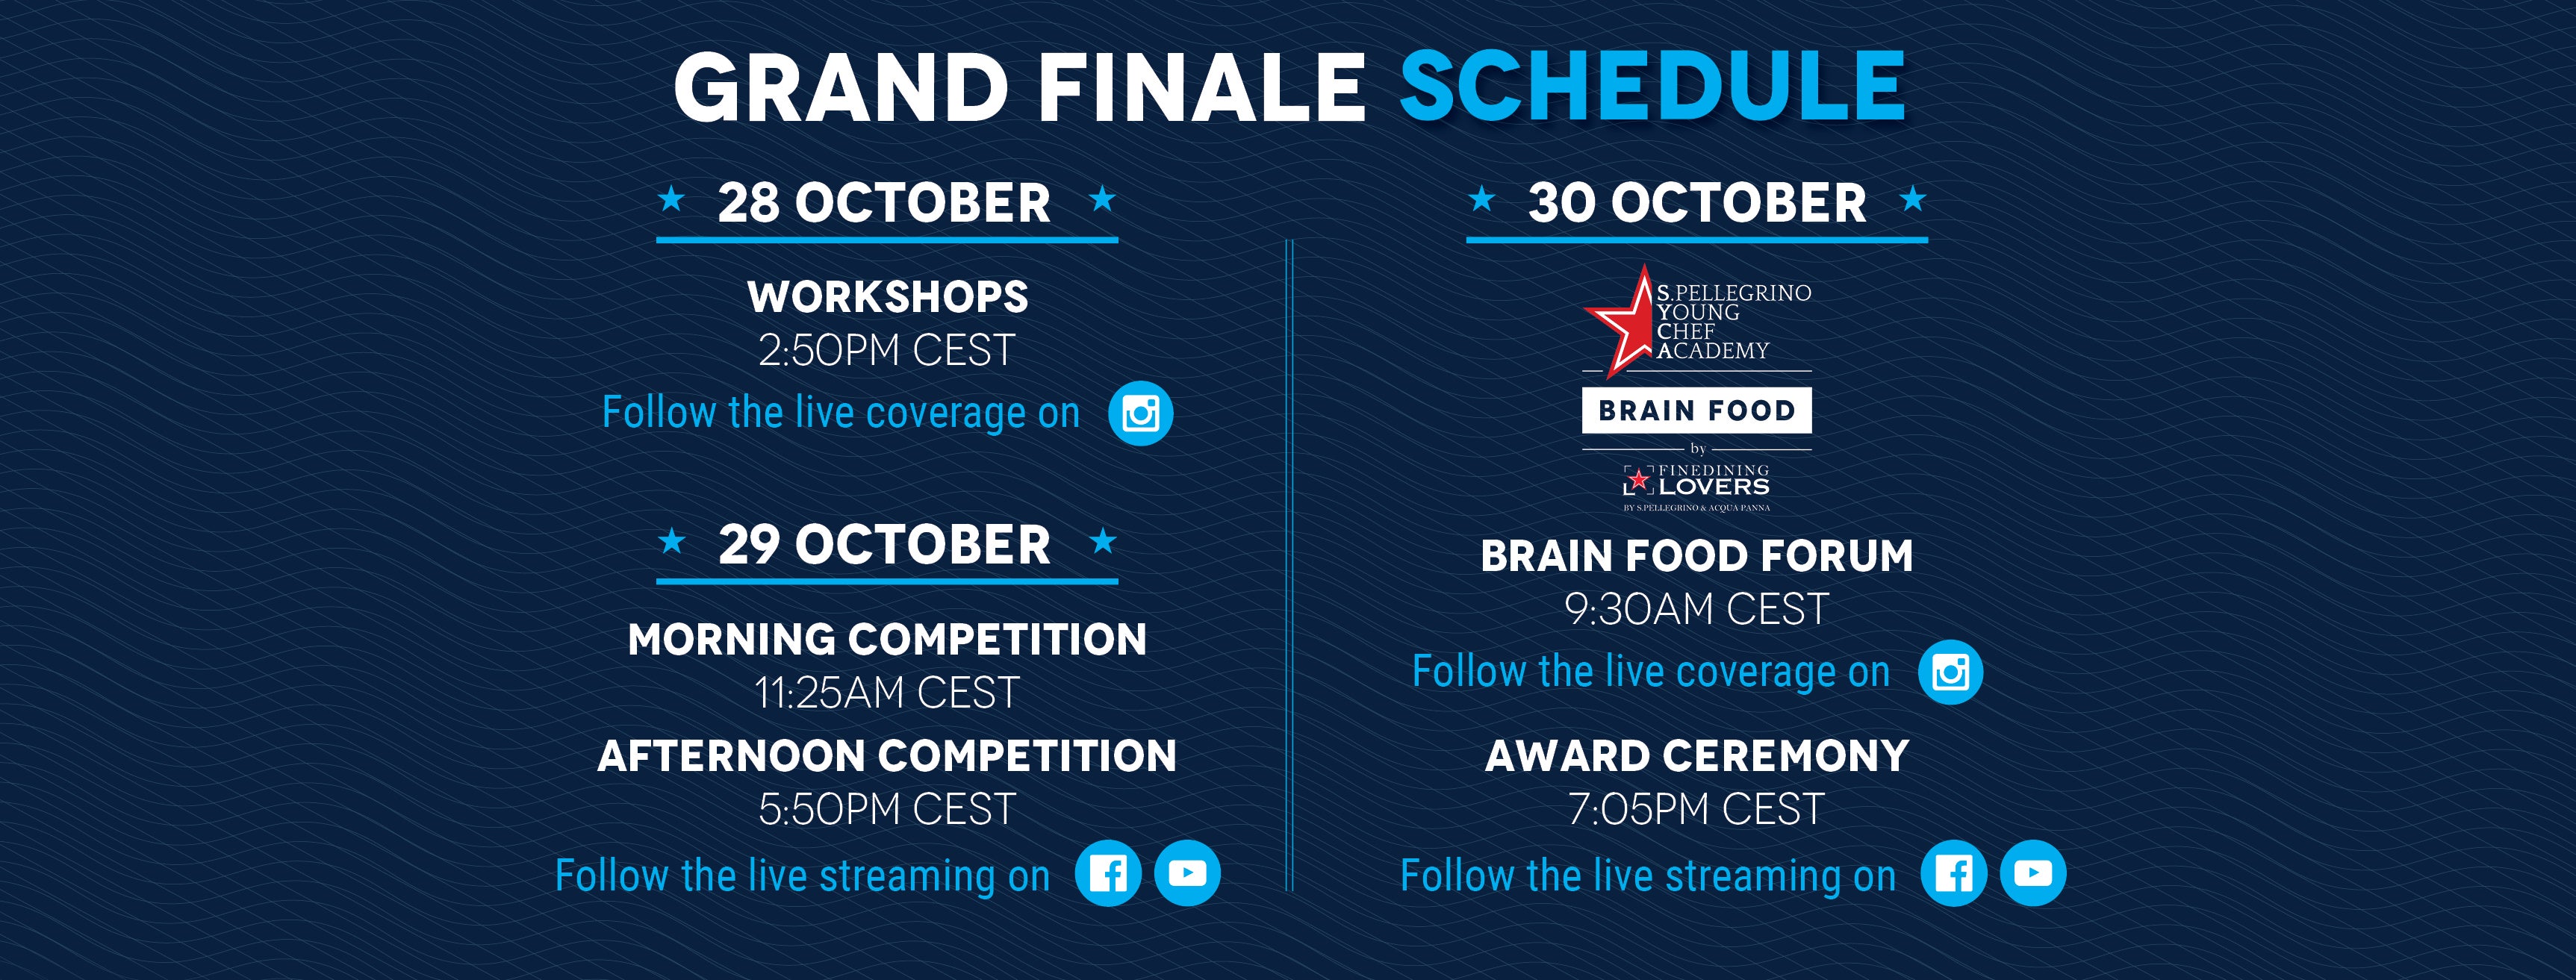 Grand Finale schedule